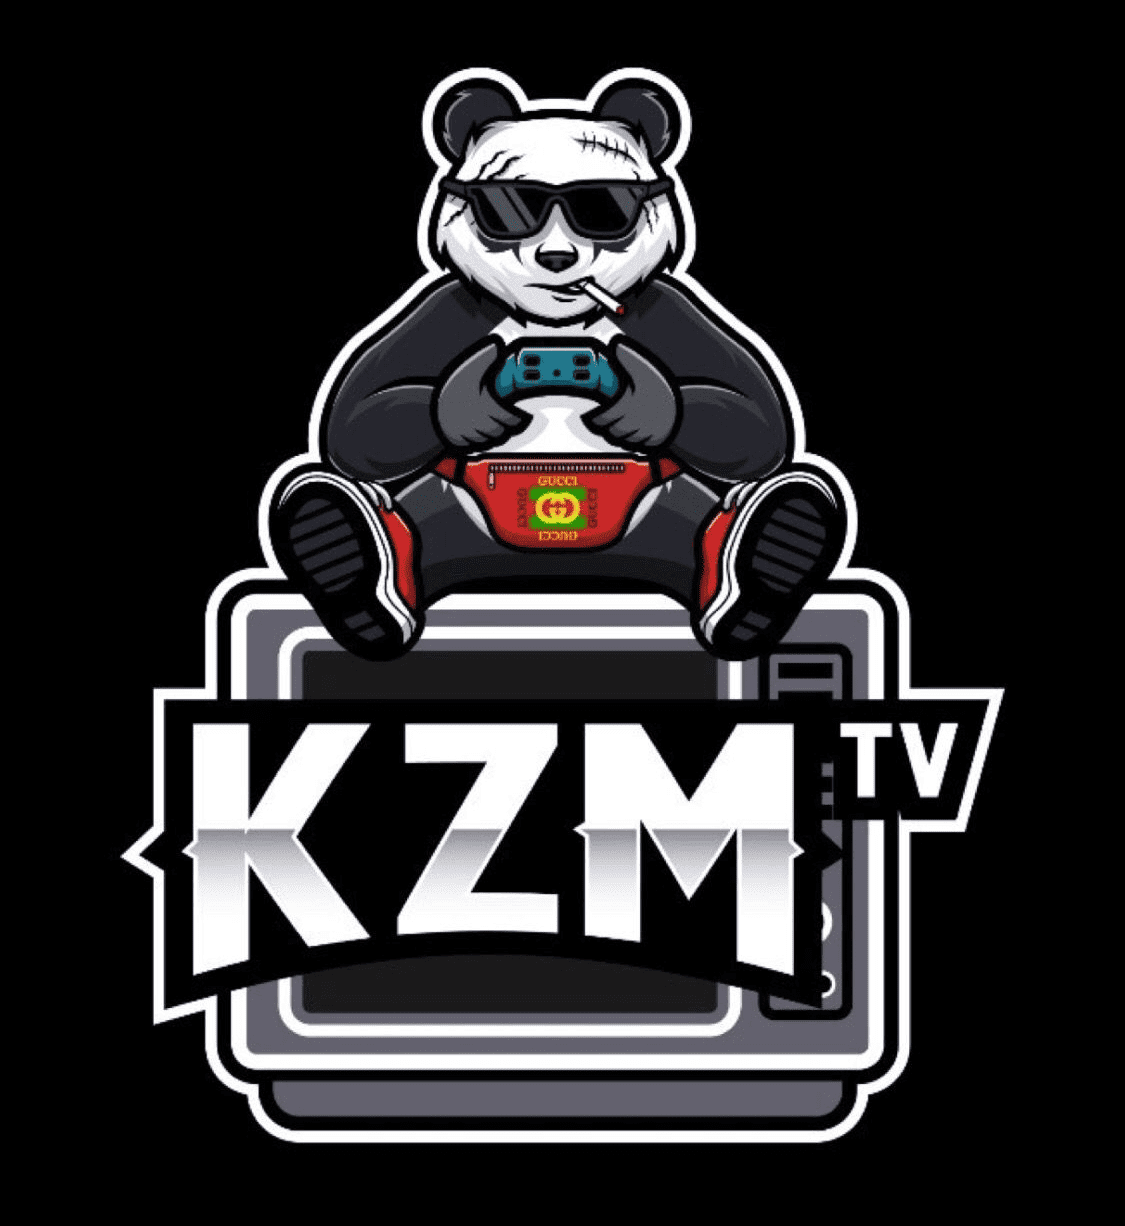 KZM - KZMTV Social Club